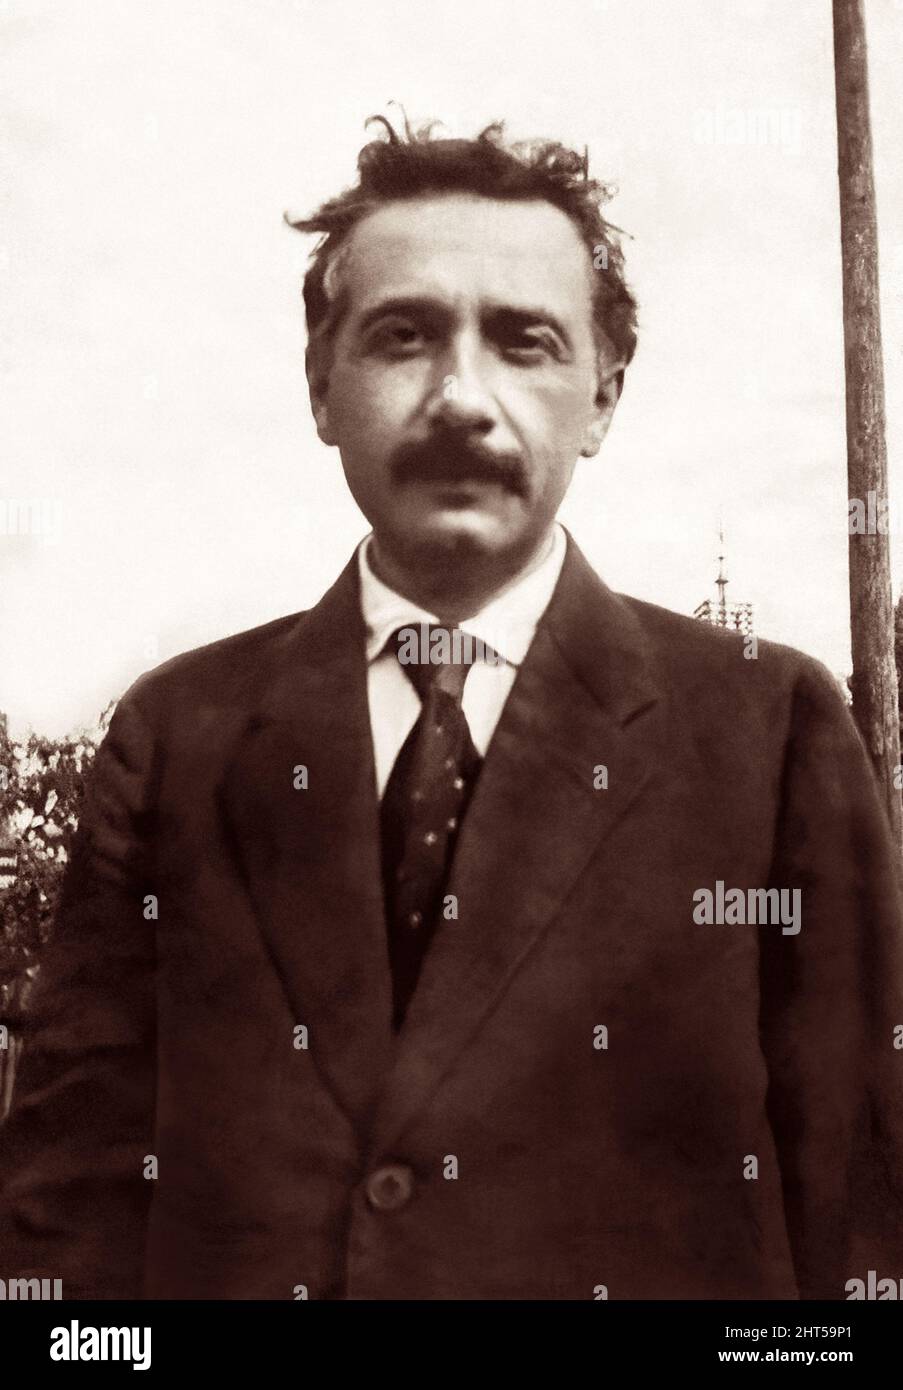 Albert Einstein (1879–1955), físico teórico nacido en Alemania que desarrolló la teoría de la relatividad y recibiría el Premio Nobel de Física 1921, en un retrato al aire libre c1919. Foto de stock